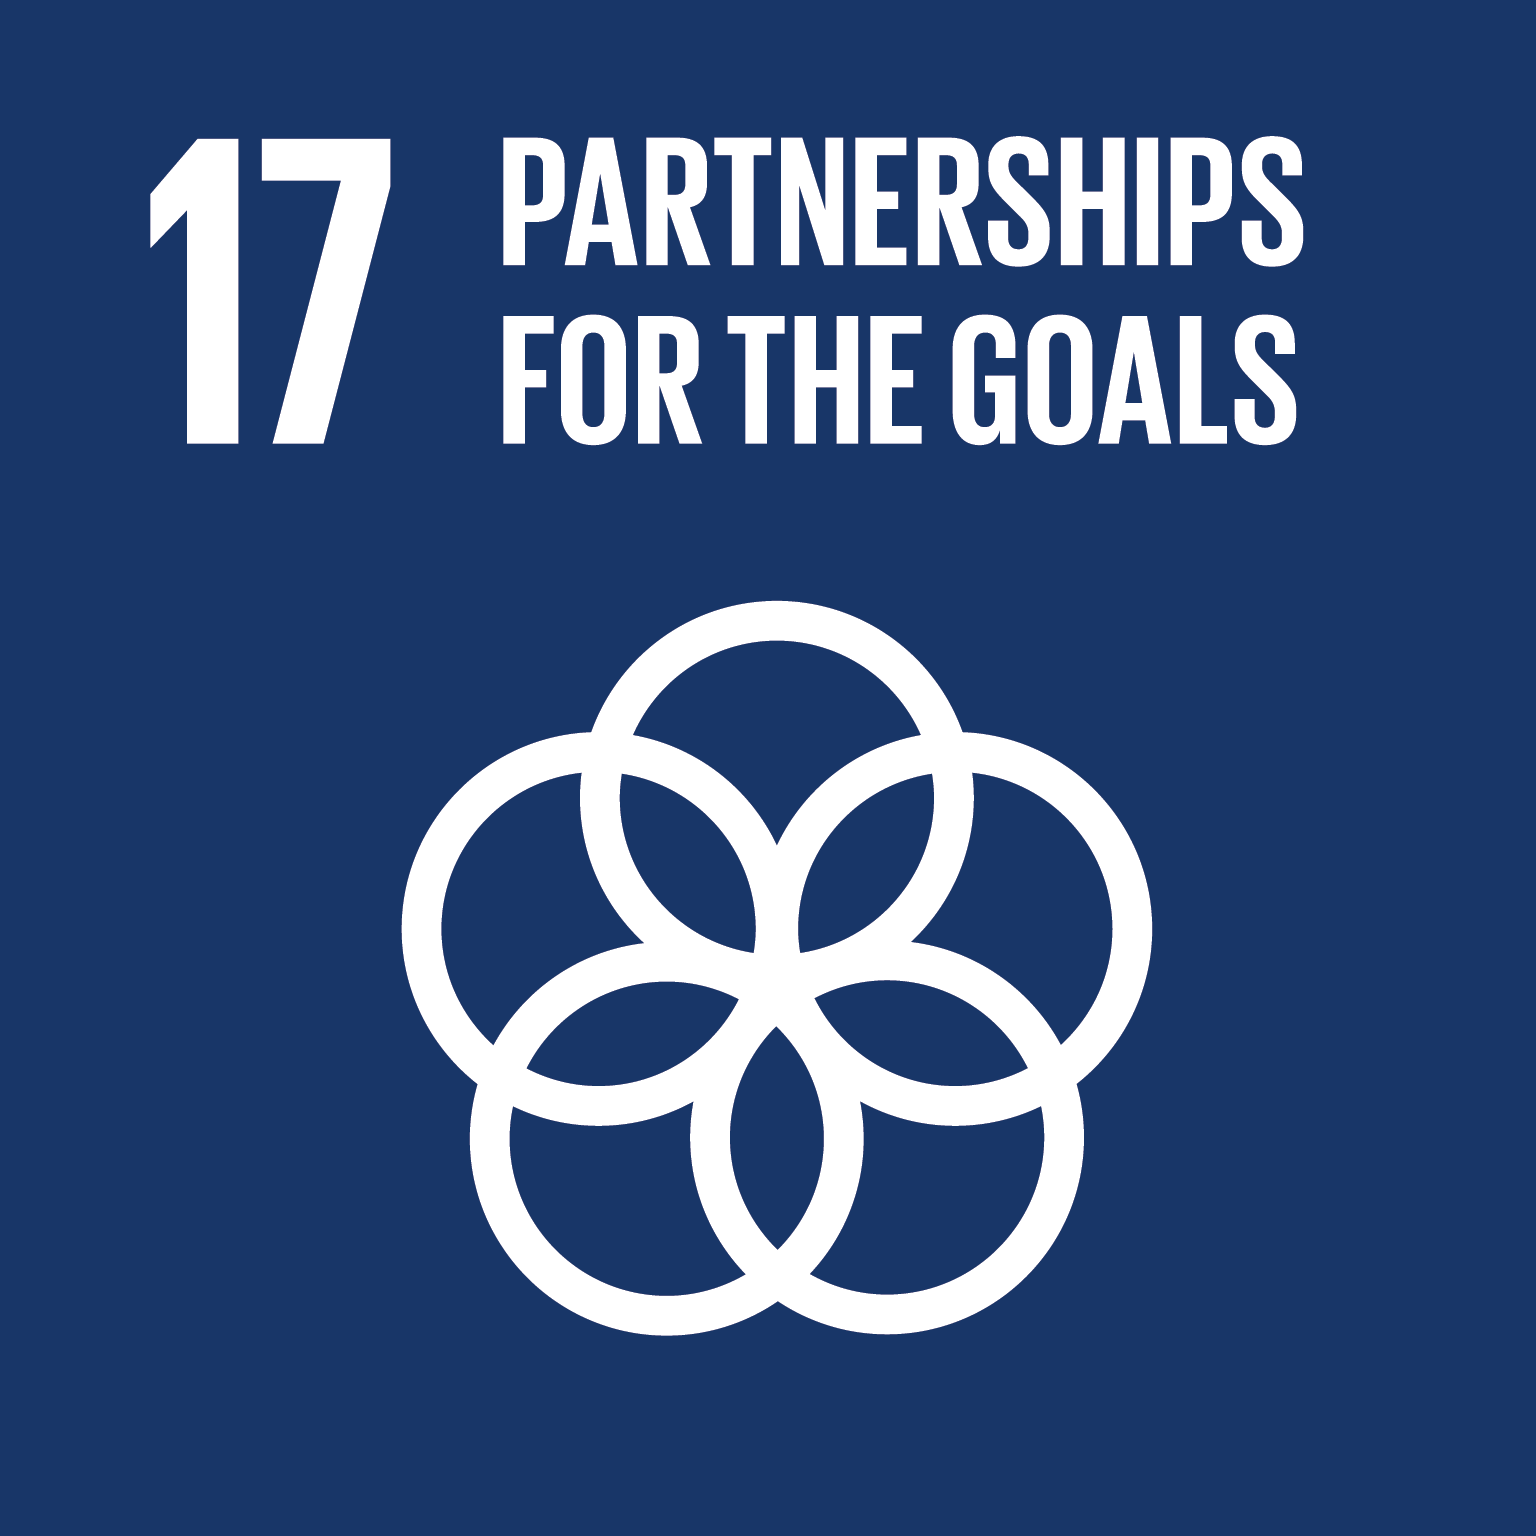 17.促進目標實現之全球夥伴關係